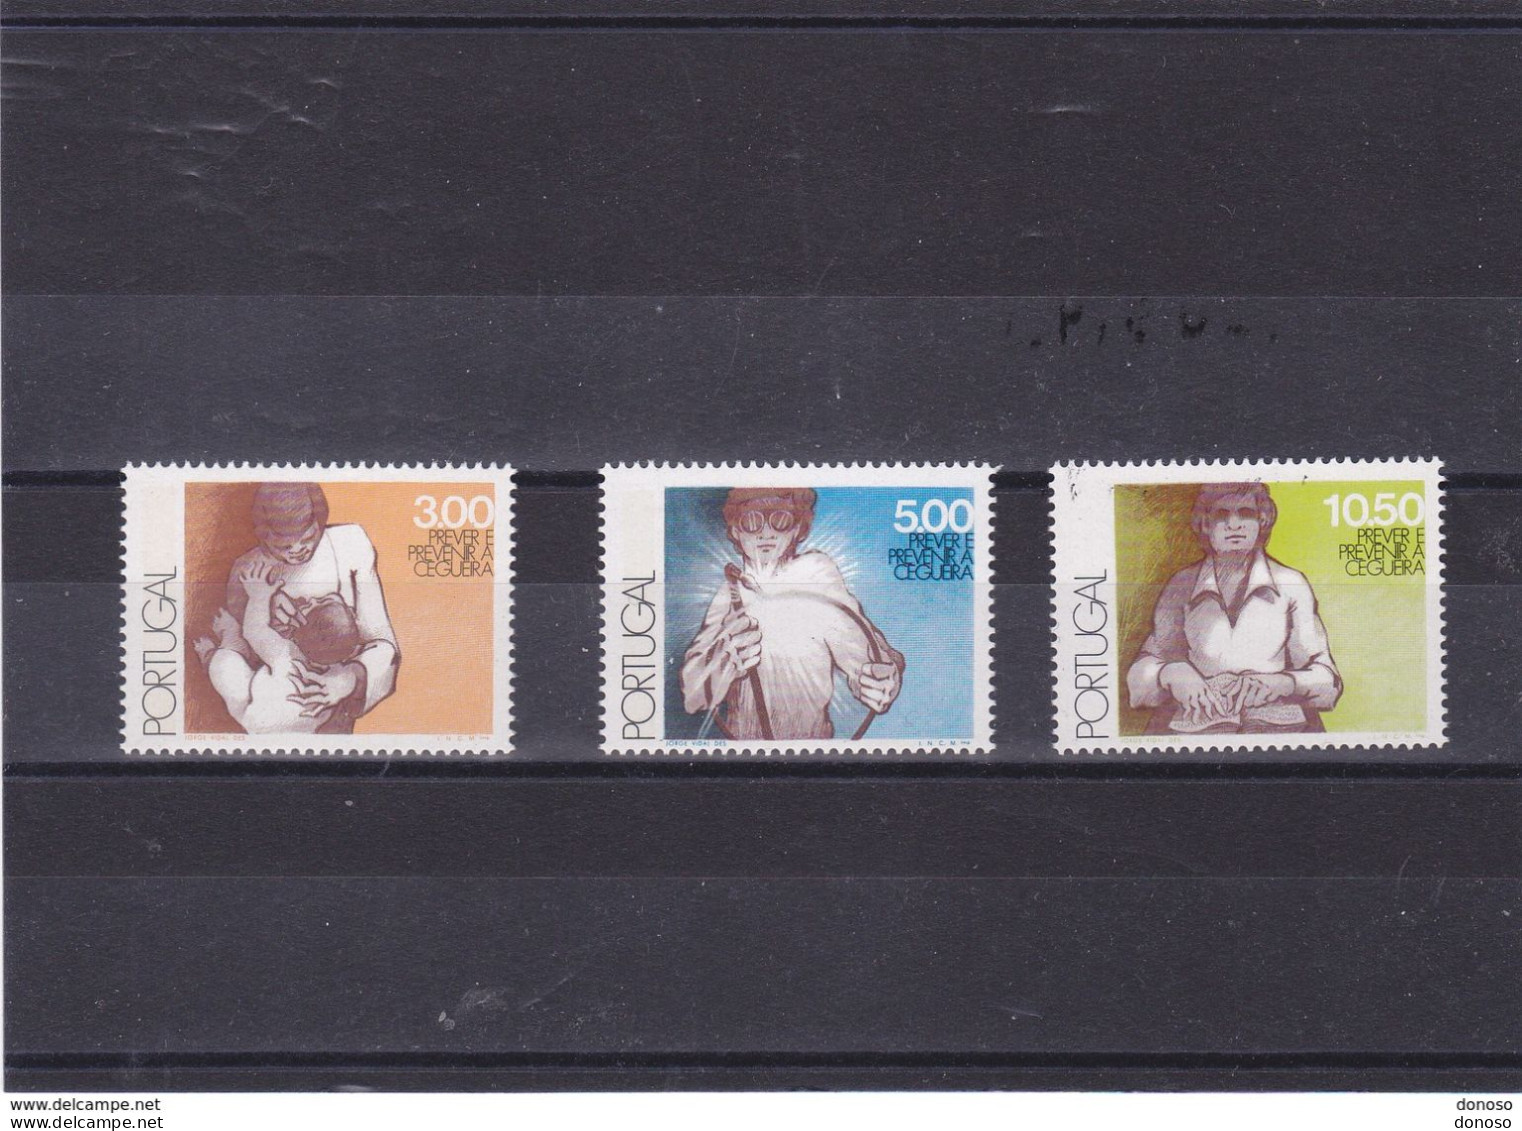 PORTUGAL 1976 Journée Mondiale De La Santé Yvert 1320-1322, Michel 1340-1342 NEUF** MNH Cote 5,50 Euros - Unused Stamps